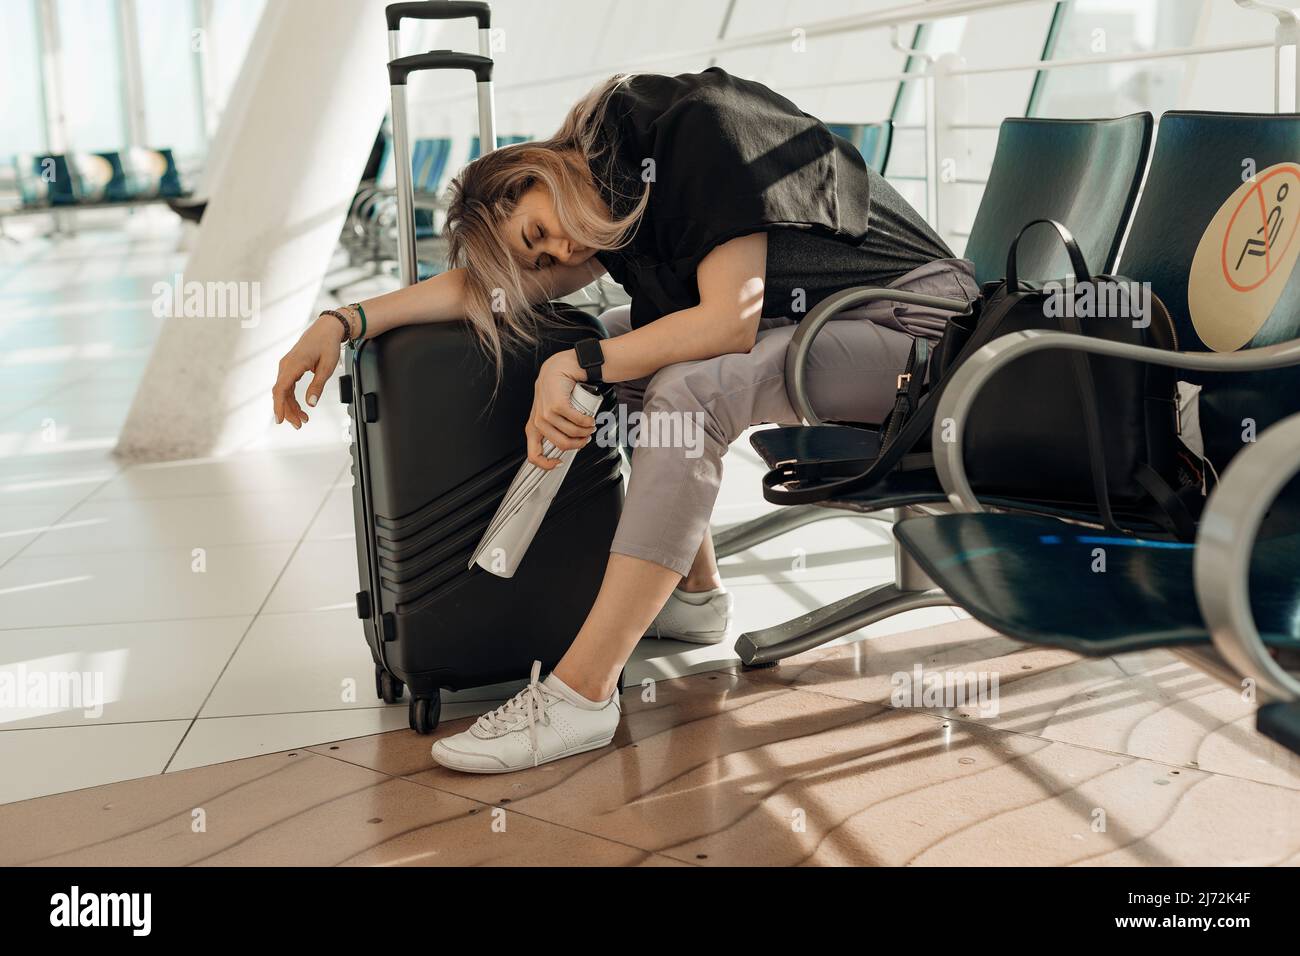 Müde und müde blonde Frau in legerer Kleidung mit Gepäck, auf Taschen gelehnt, sitzt im Flughafenterminal. Flug stornieren Stockfoto